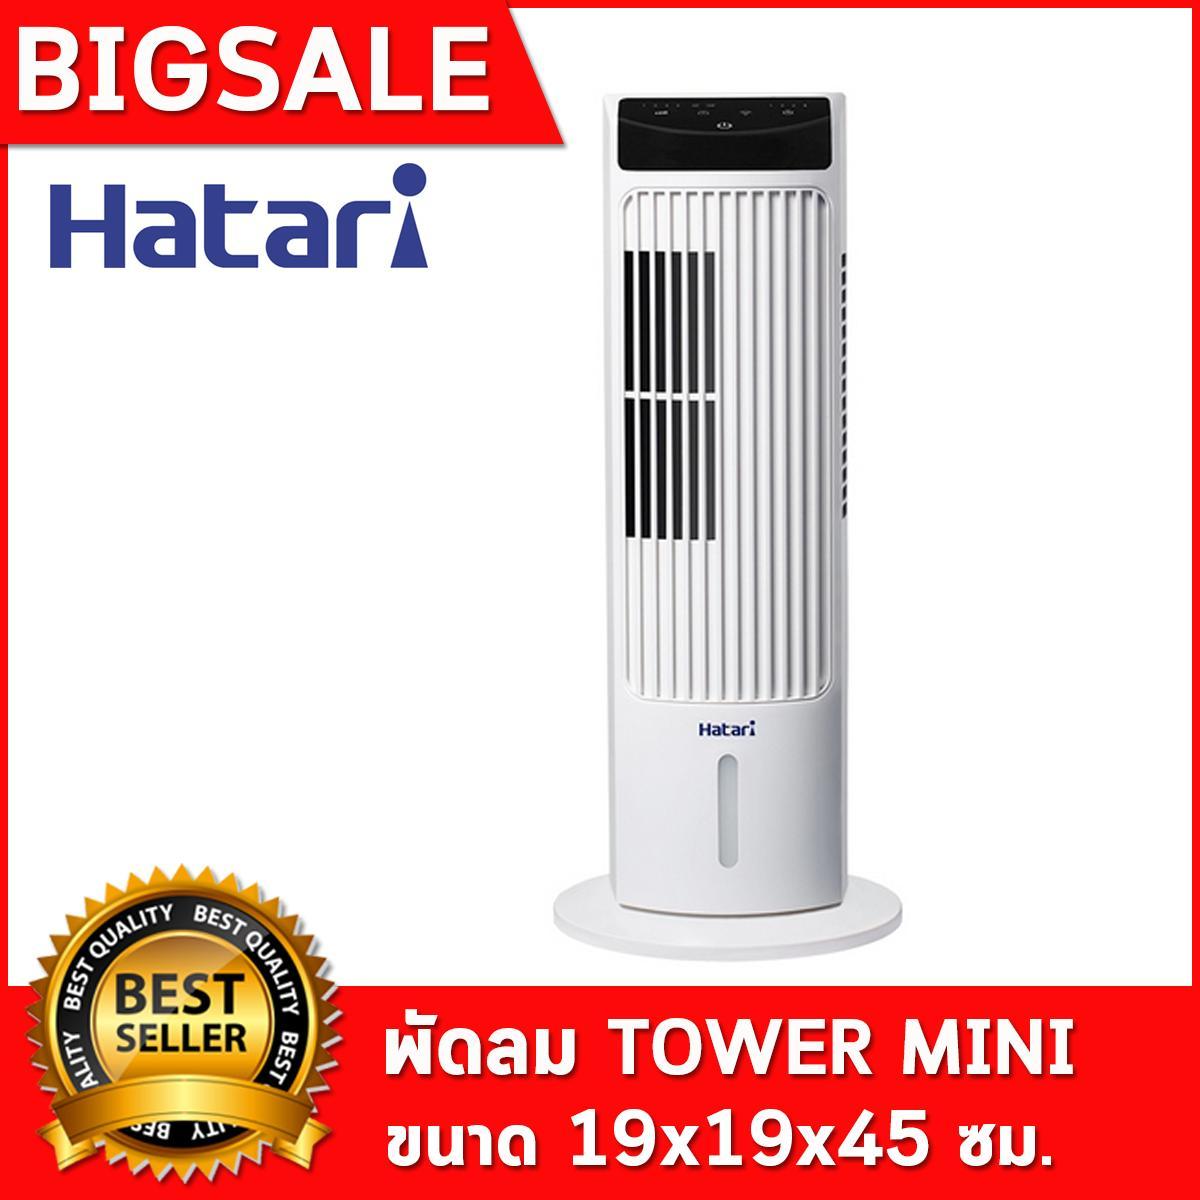 พร้อมส่ง!!! ส่งฟรี ทั่วไทย Hatari mini tower พัดลมทาวเวอร์ พัดลมตั้งพื้น พัดลม พัดลมตั้งโต๊ะ พัดลมไอเย็น  Hatari brand tower fan ส่งฟรี ทั่วไทย เครื่อง ทำ ความเย็น